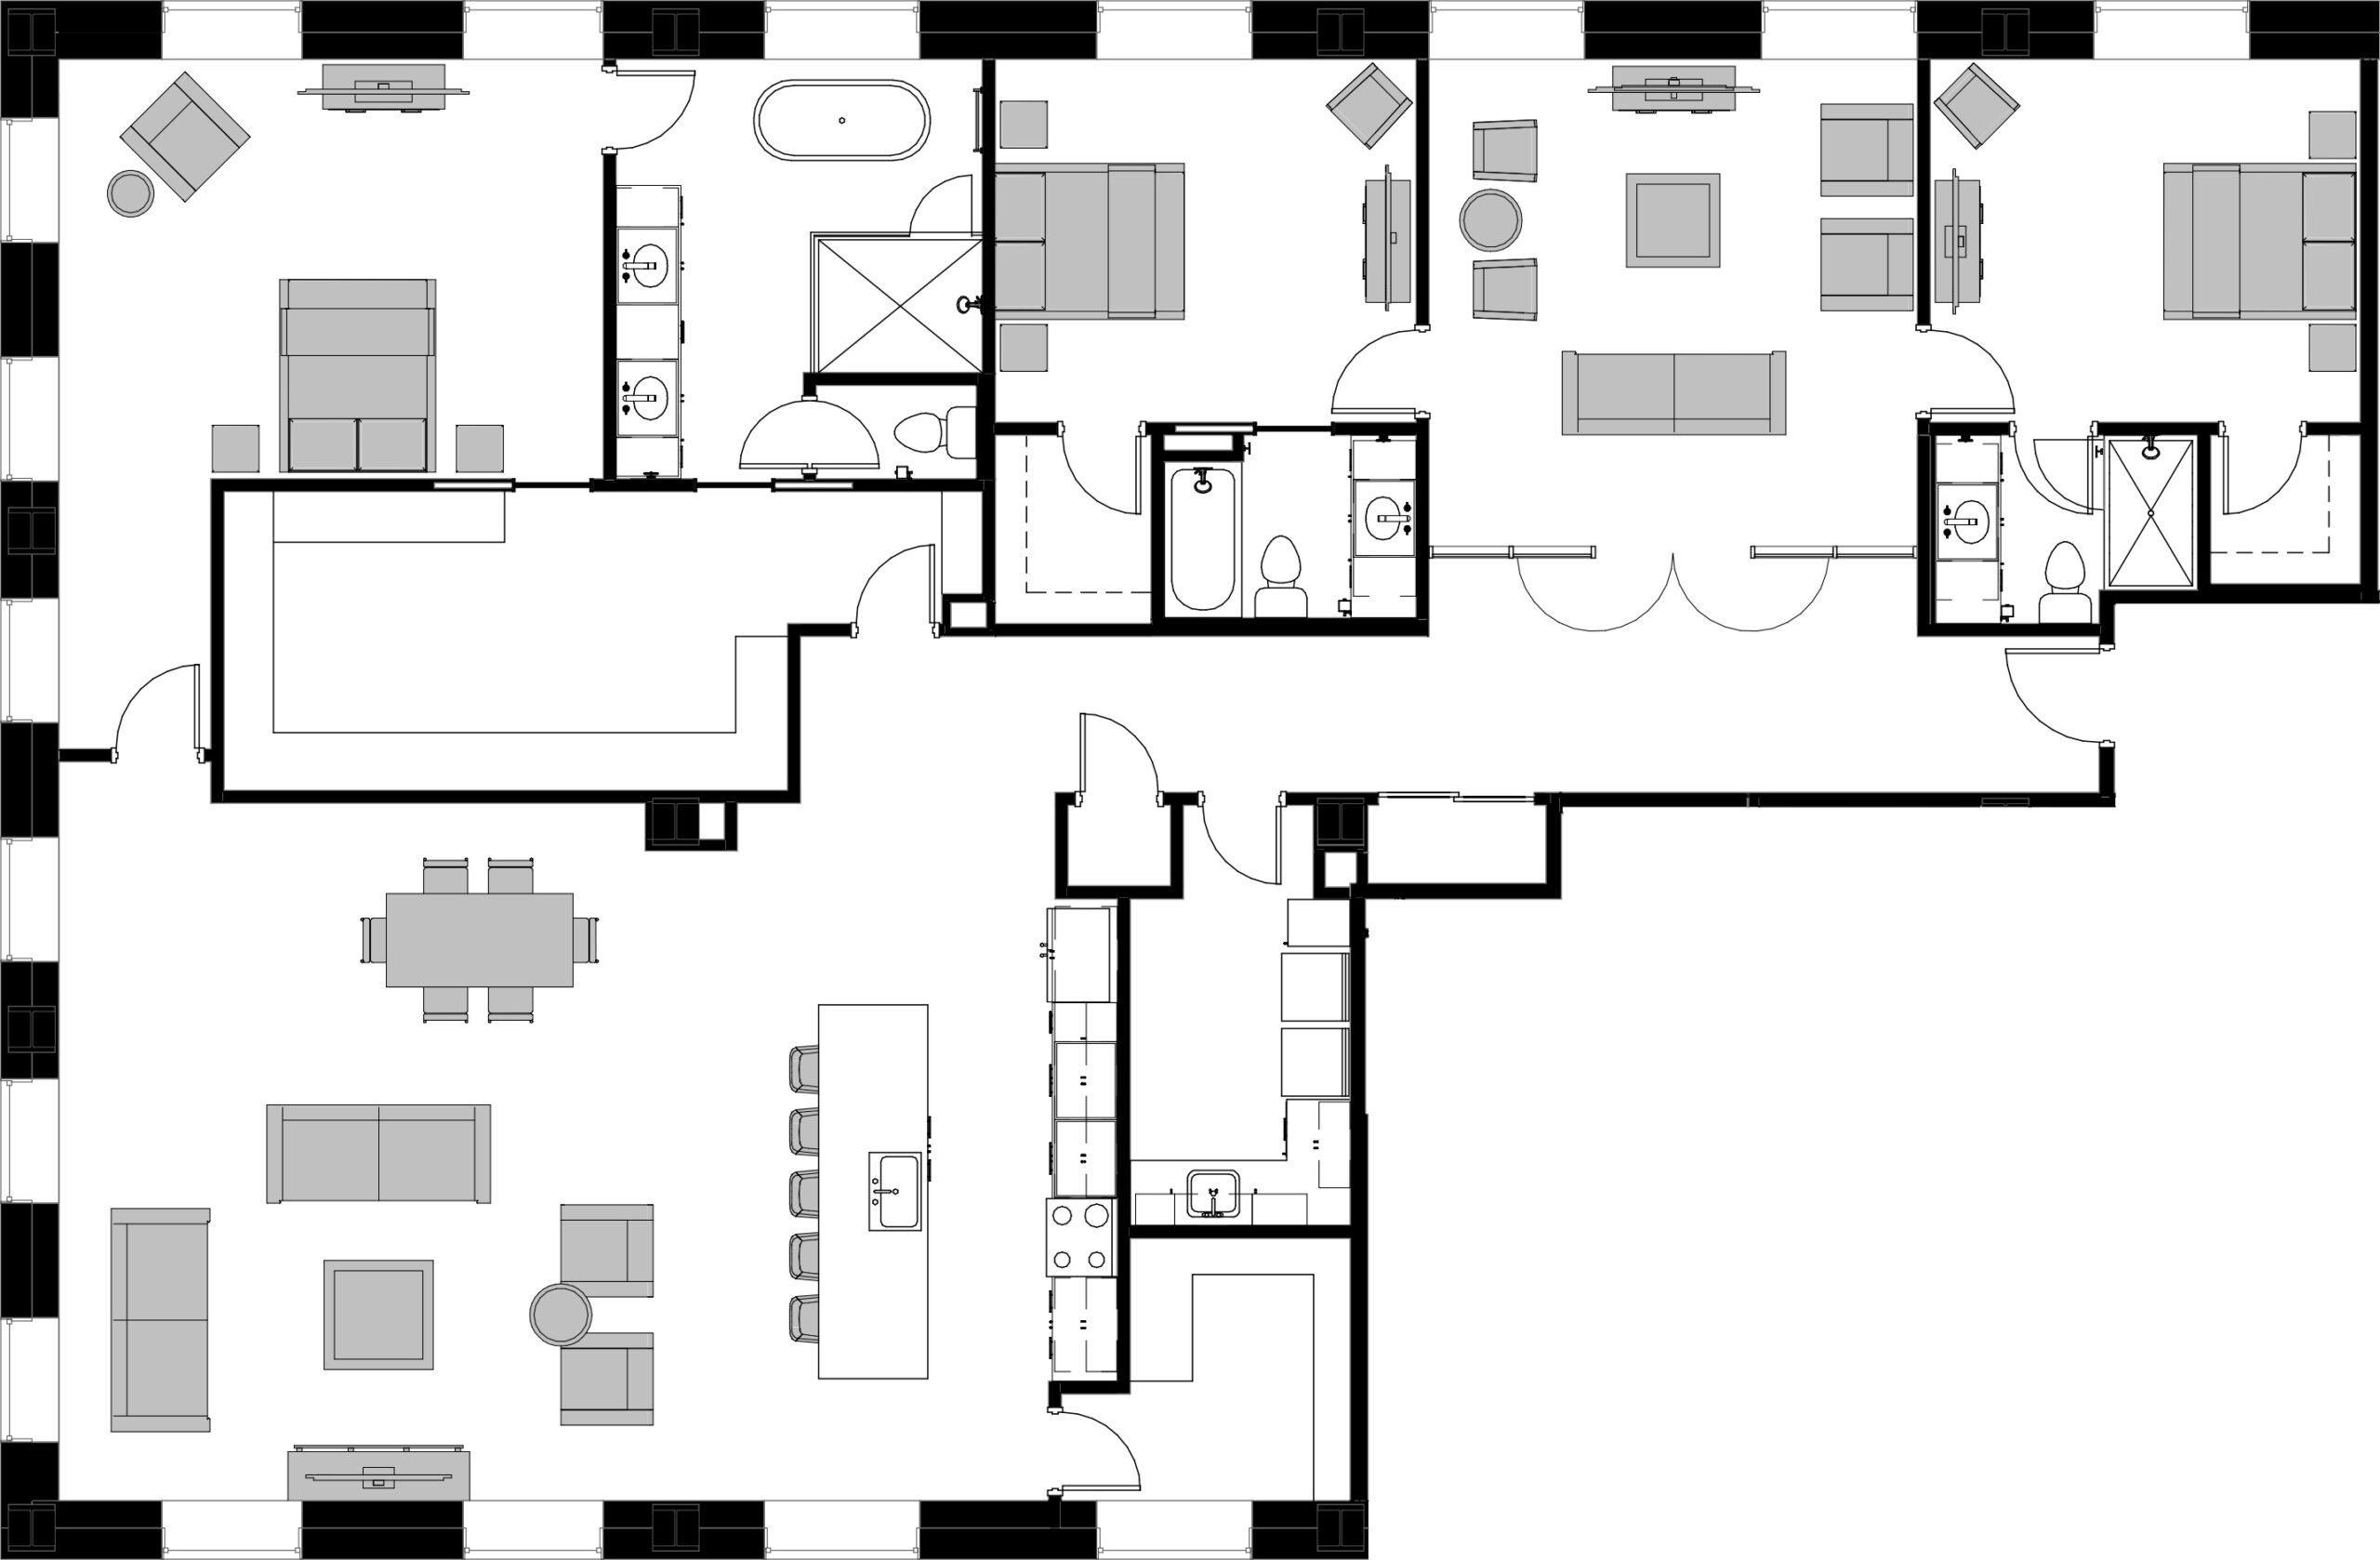 ARCO 3 Bedroom Floor Plan